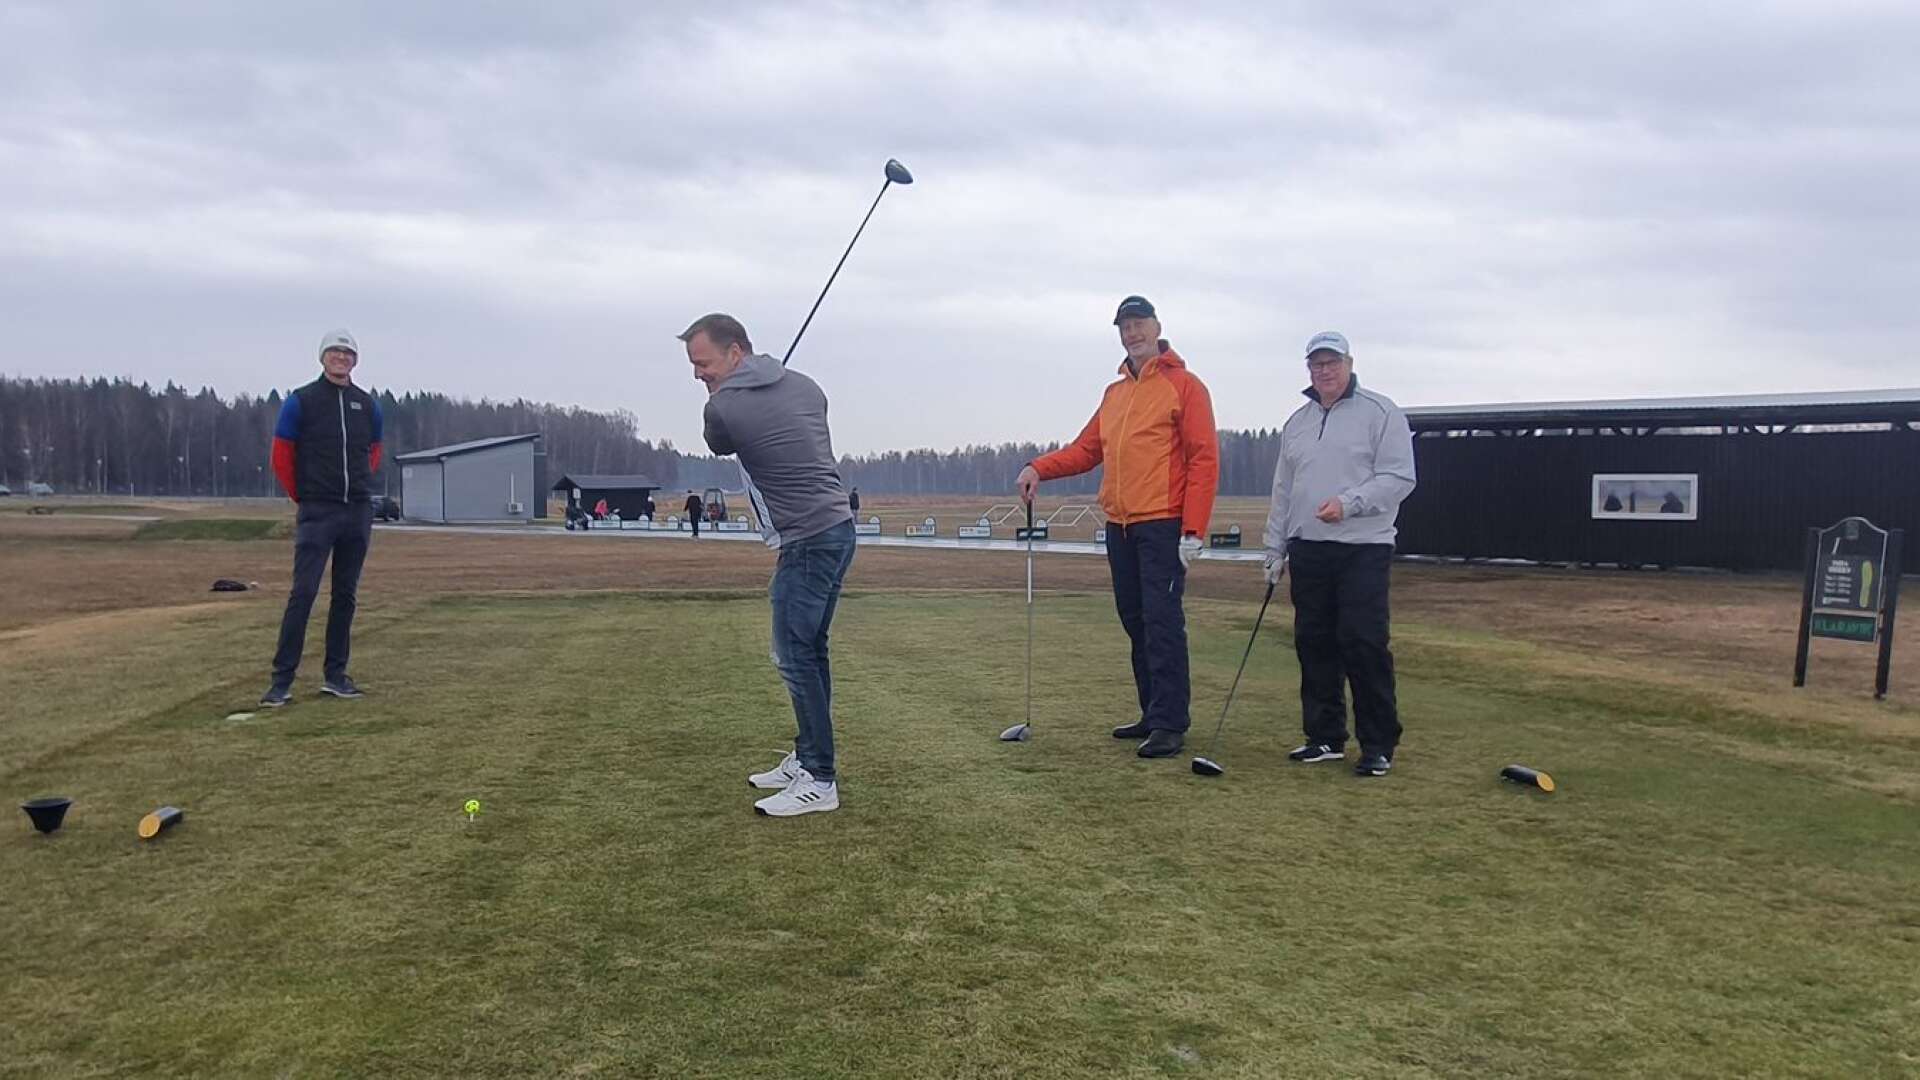 Här inleder Rickard Axinger den värmländska golfsäsongen tillsammans med Mats Lilja och Bengt Haglund. Till vänster syns klubbchefen Martin Lindén.